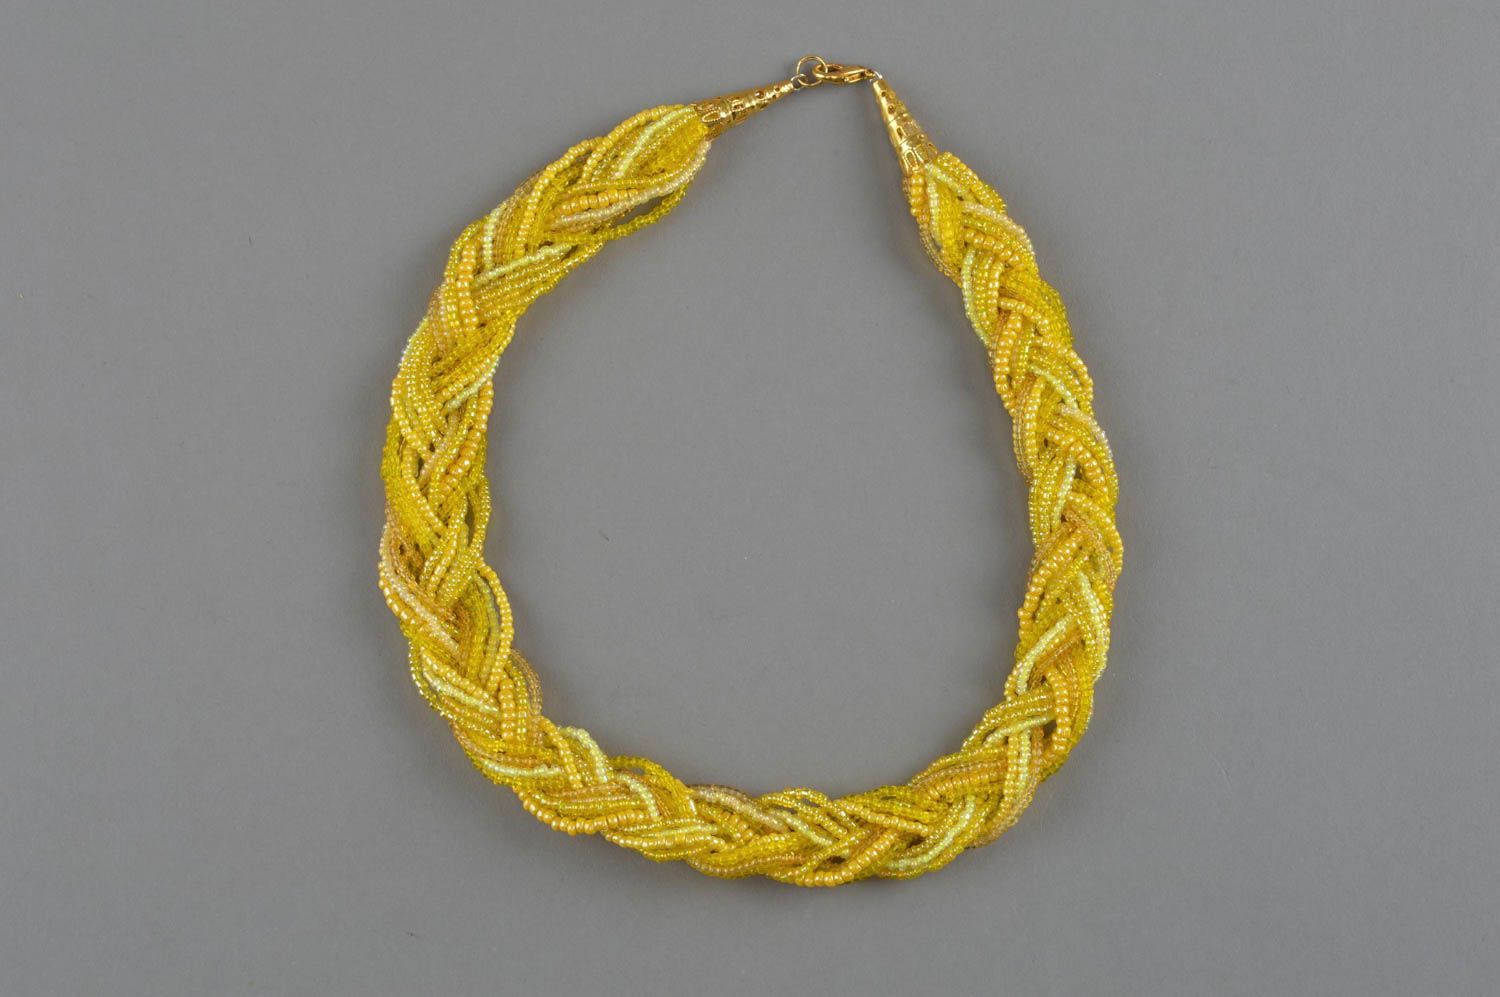 Ожерелье из бисера плетеное ручной работы оригинальное желтое косичкой фото 2